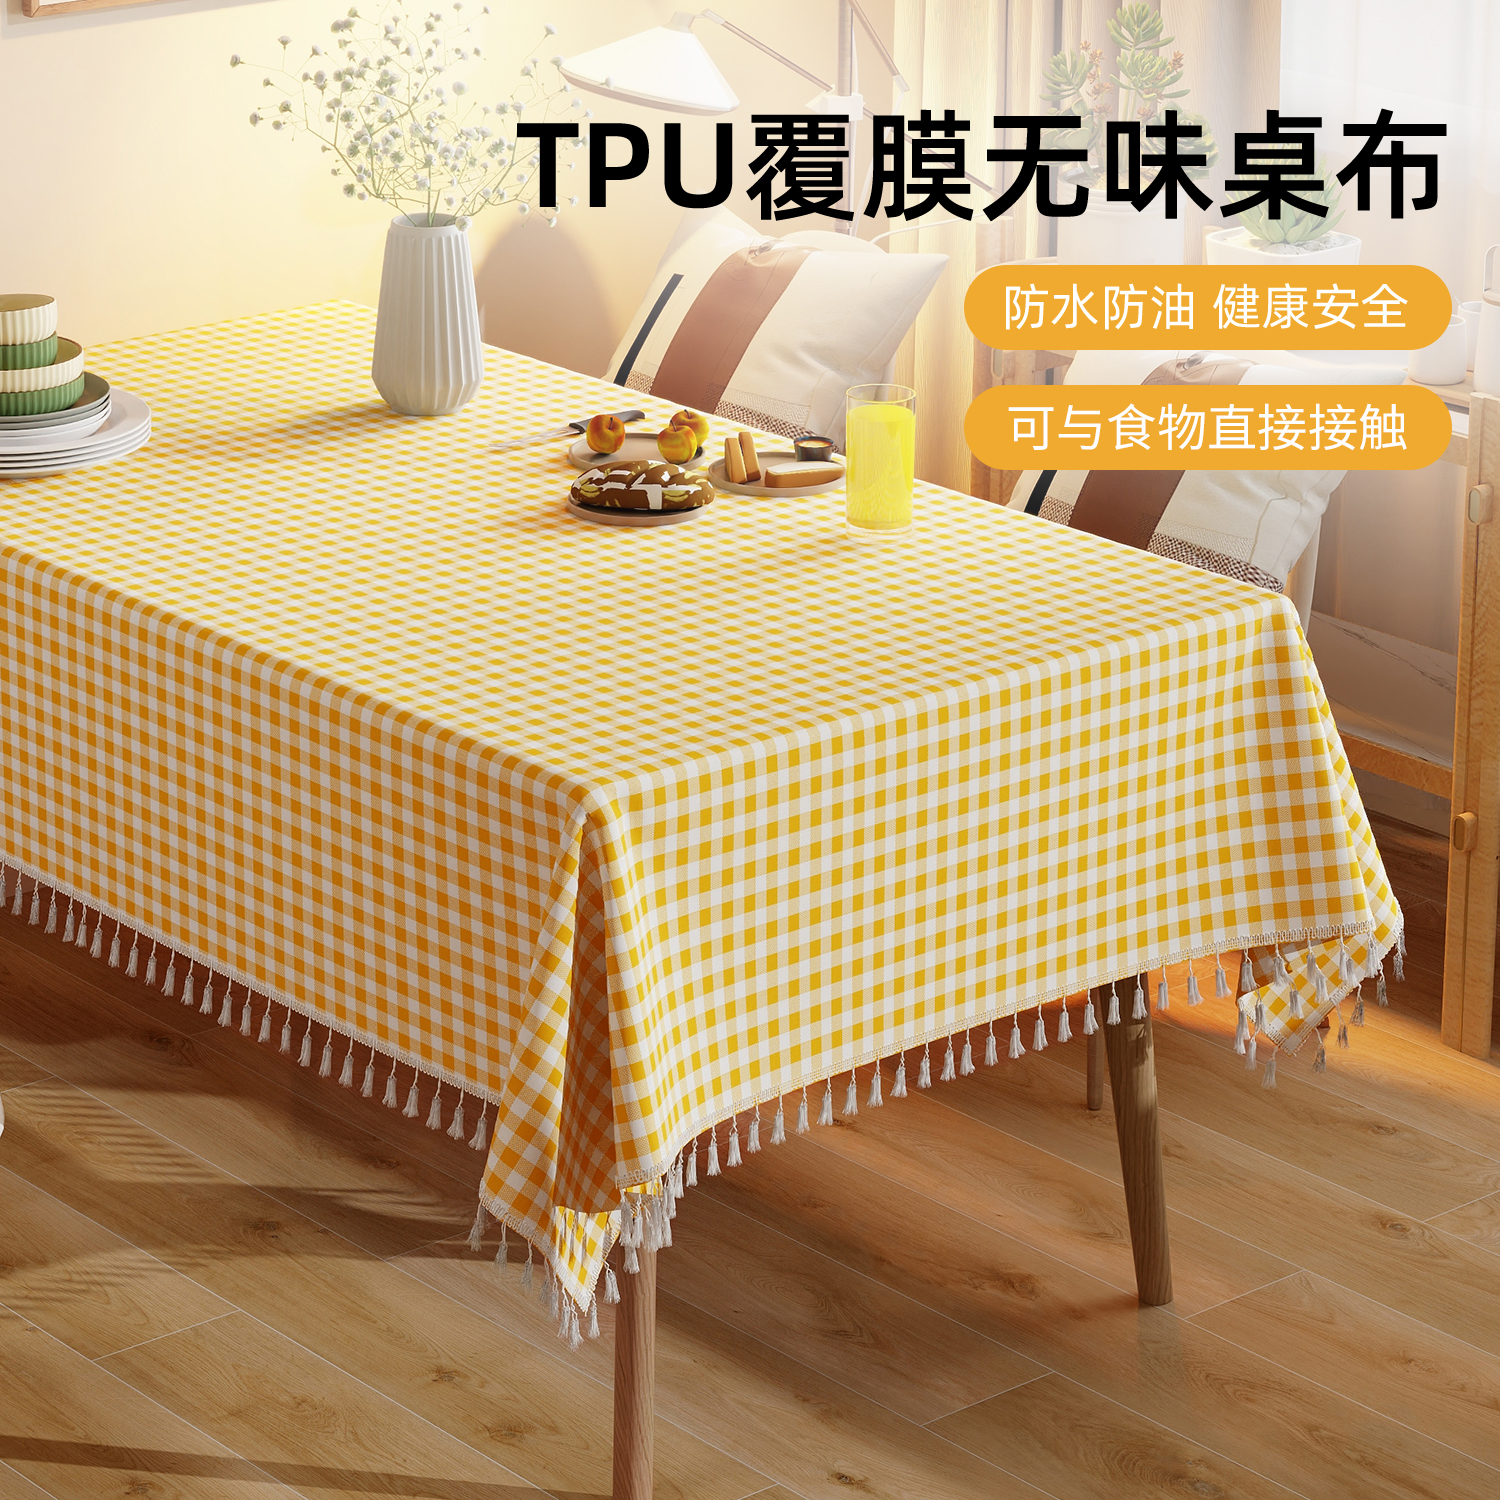 TPU桌布免洗防水防油防烫餐垫小清新格子长方形家用餐桌茶几垫布